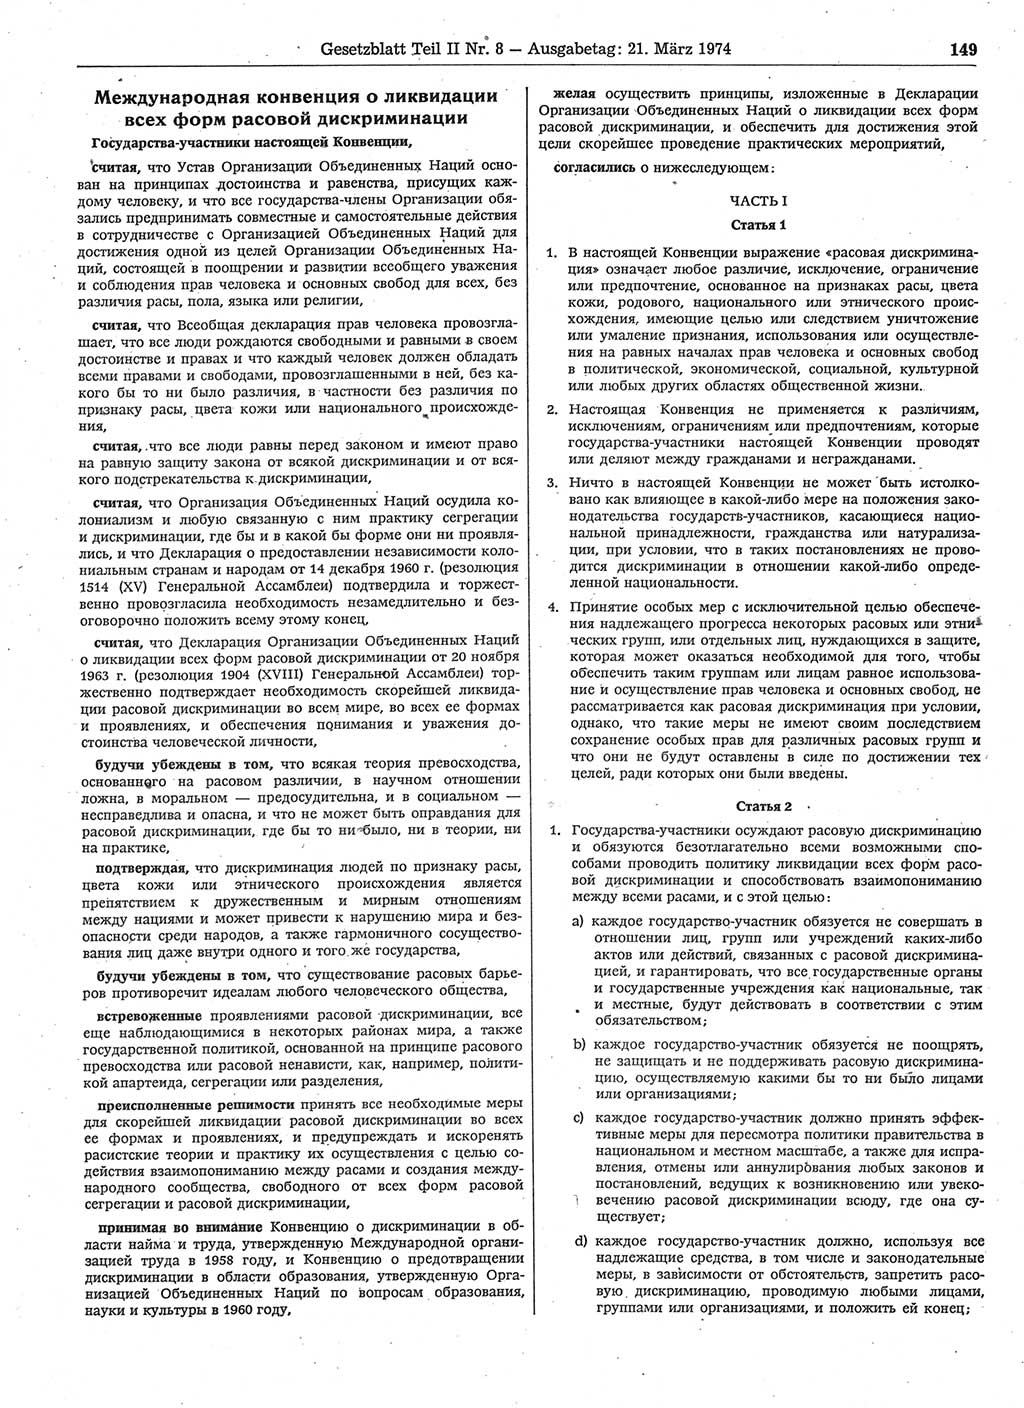 Gesetzblatt (GBl.) der Deutschen Demokratischen Republik (DDR) Teil ⅠⅠ 1974, Seite 149 (GBl. DDR ⅠⅠ 1974, S. 149)